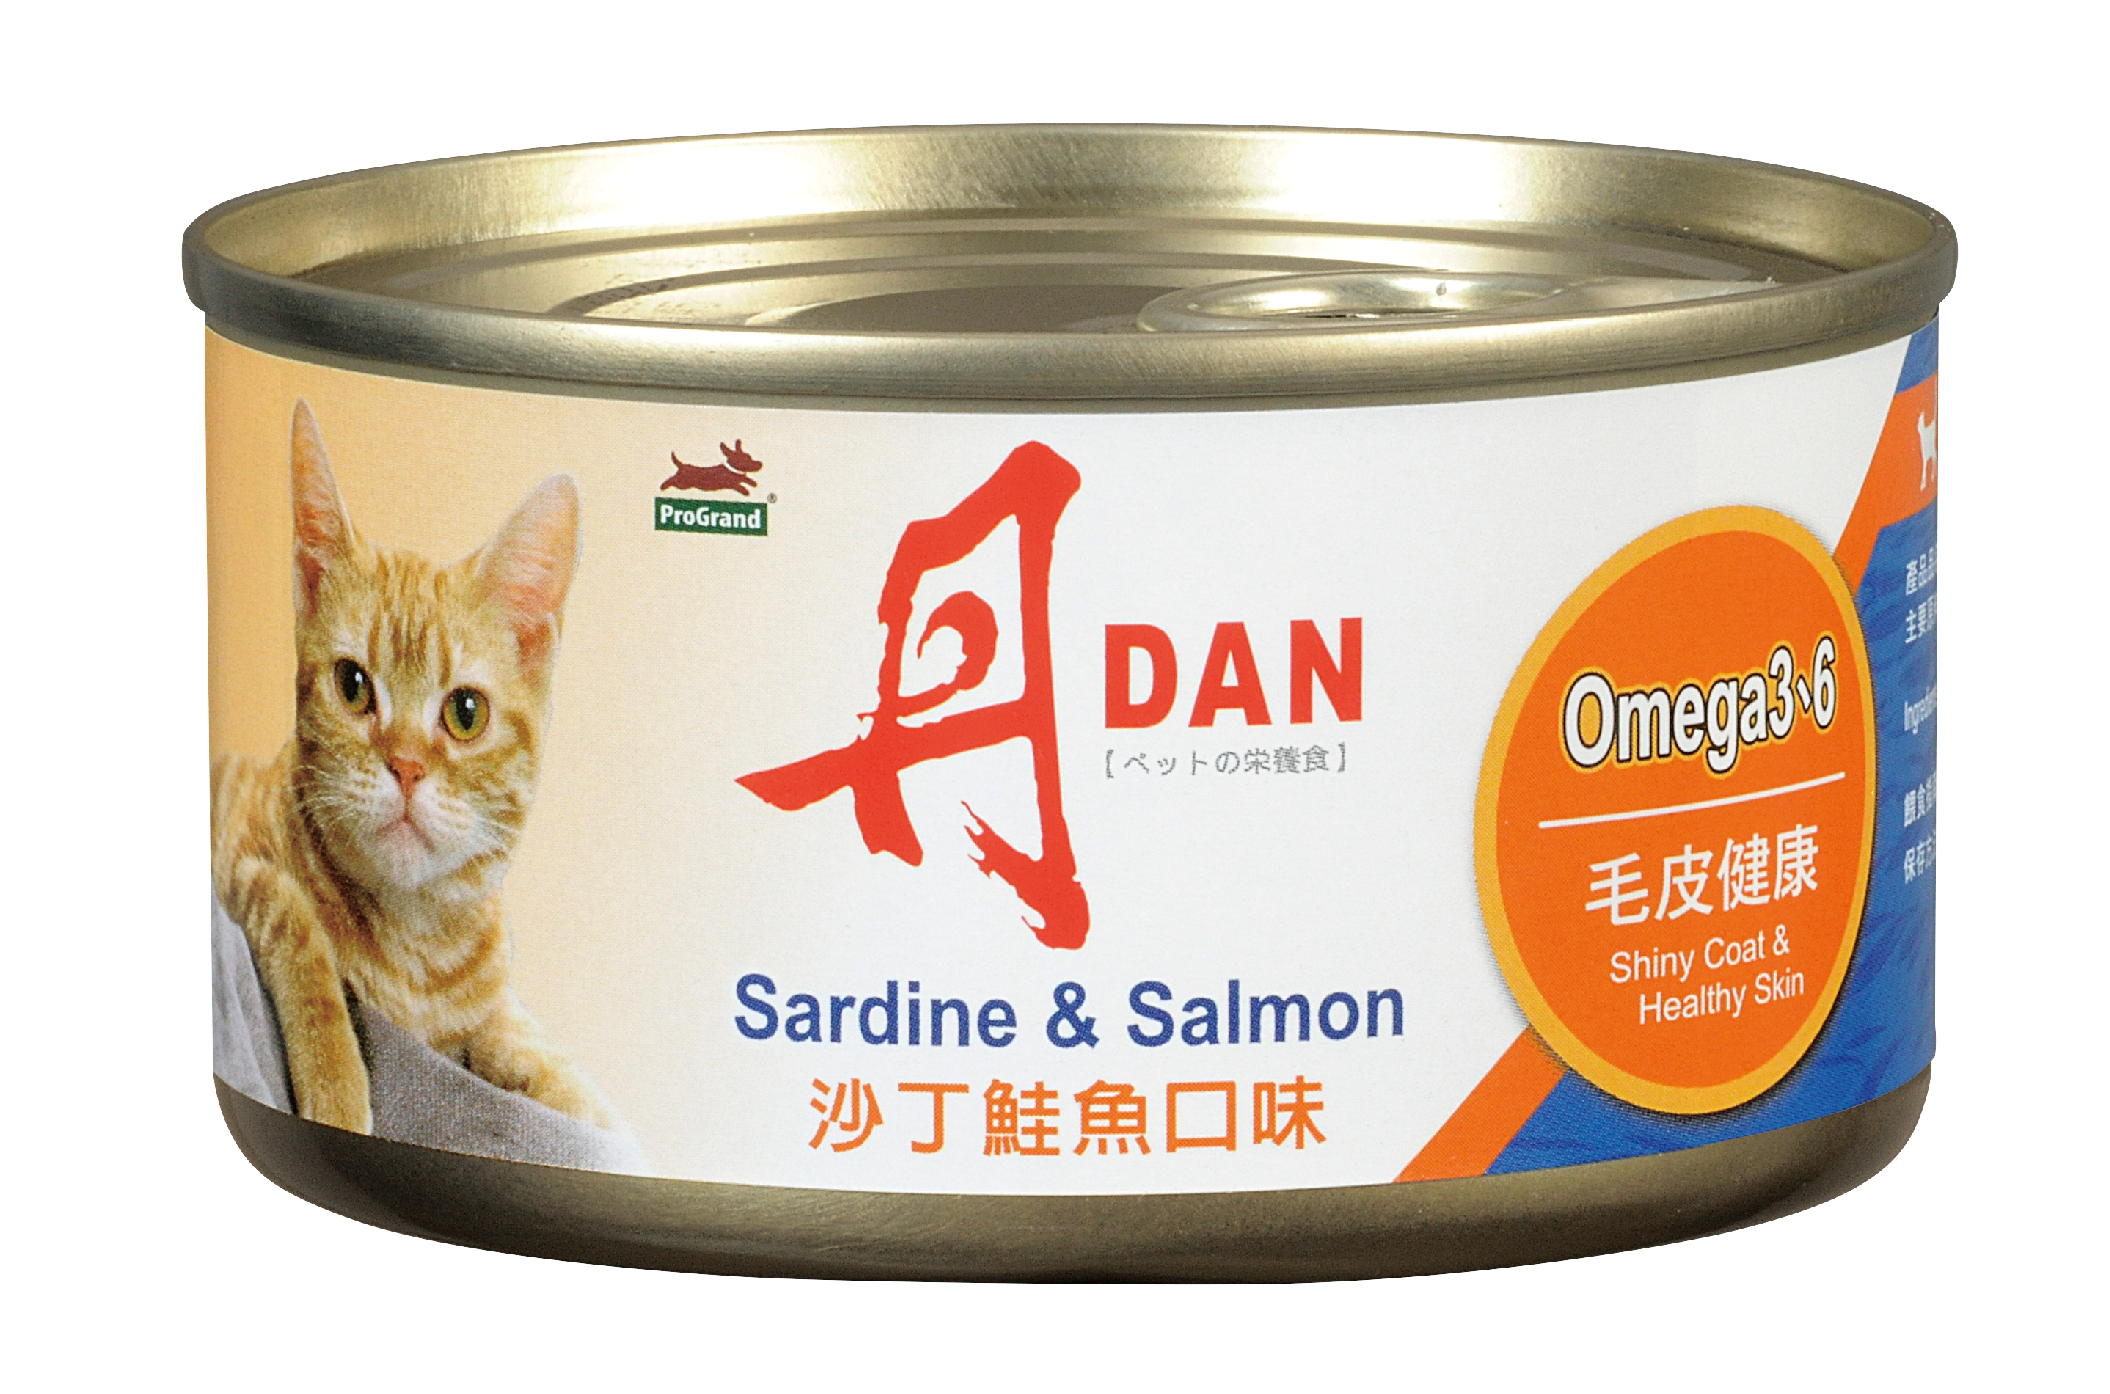 丹DAN 愛貓罐頭沙丁鮭魚口味
DAN Canned Cat Food - Sardine&Salmon Flavor